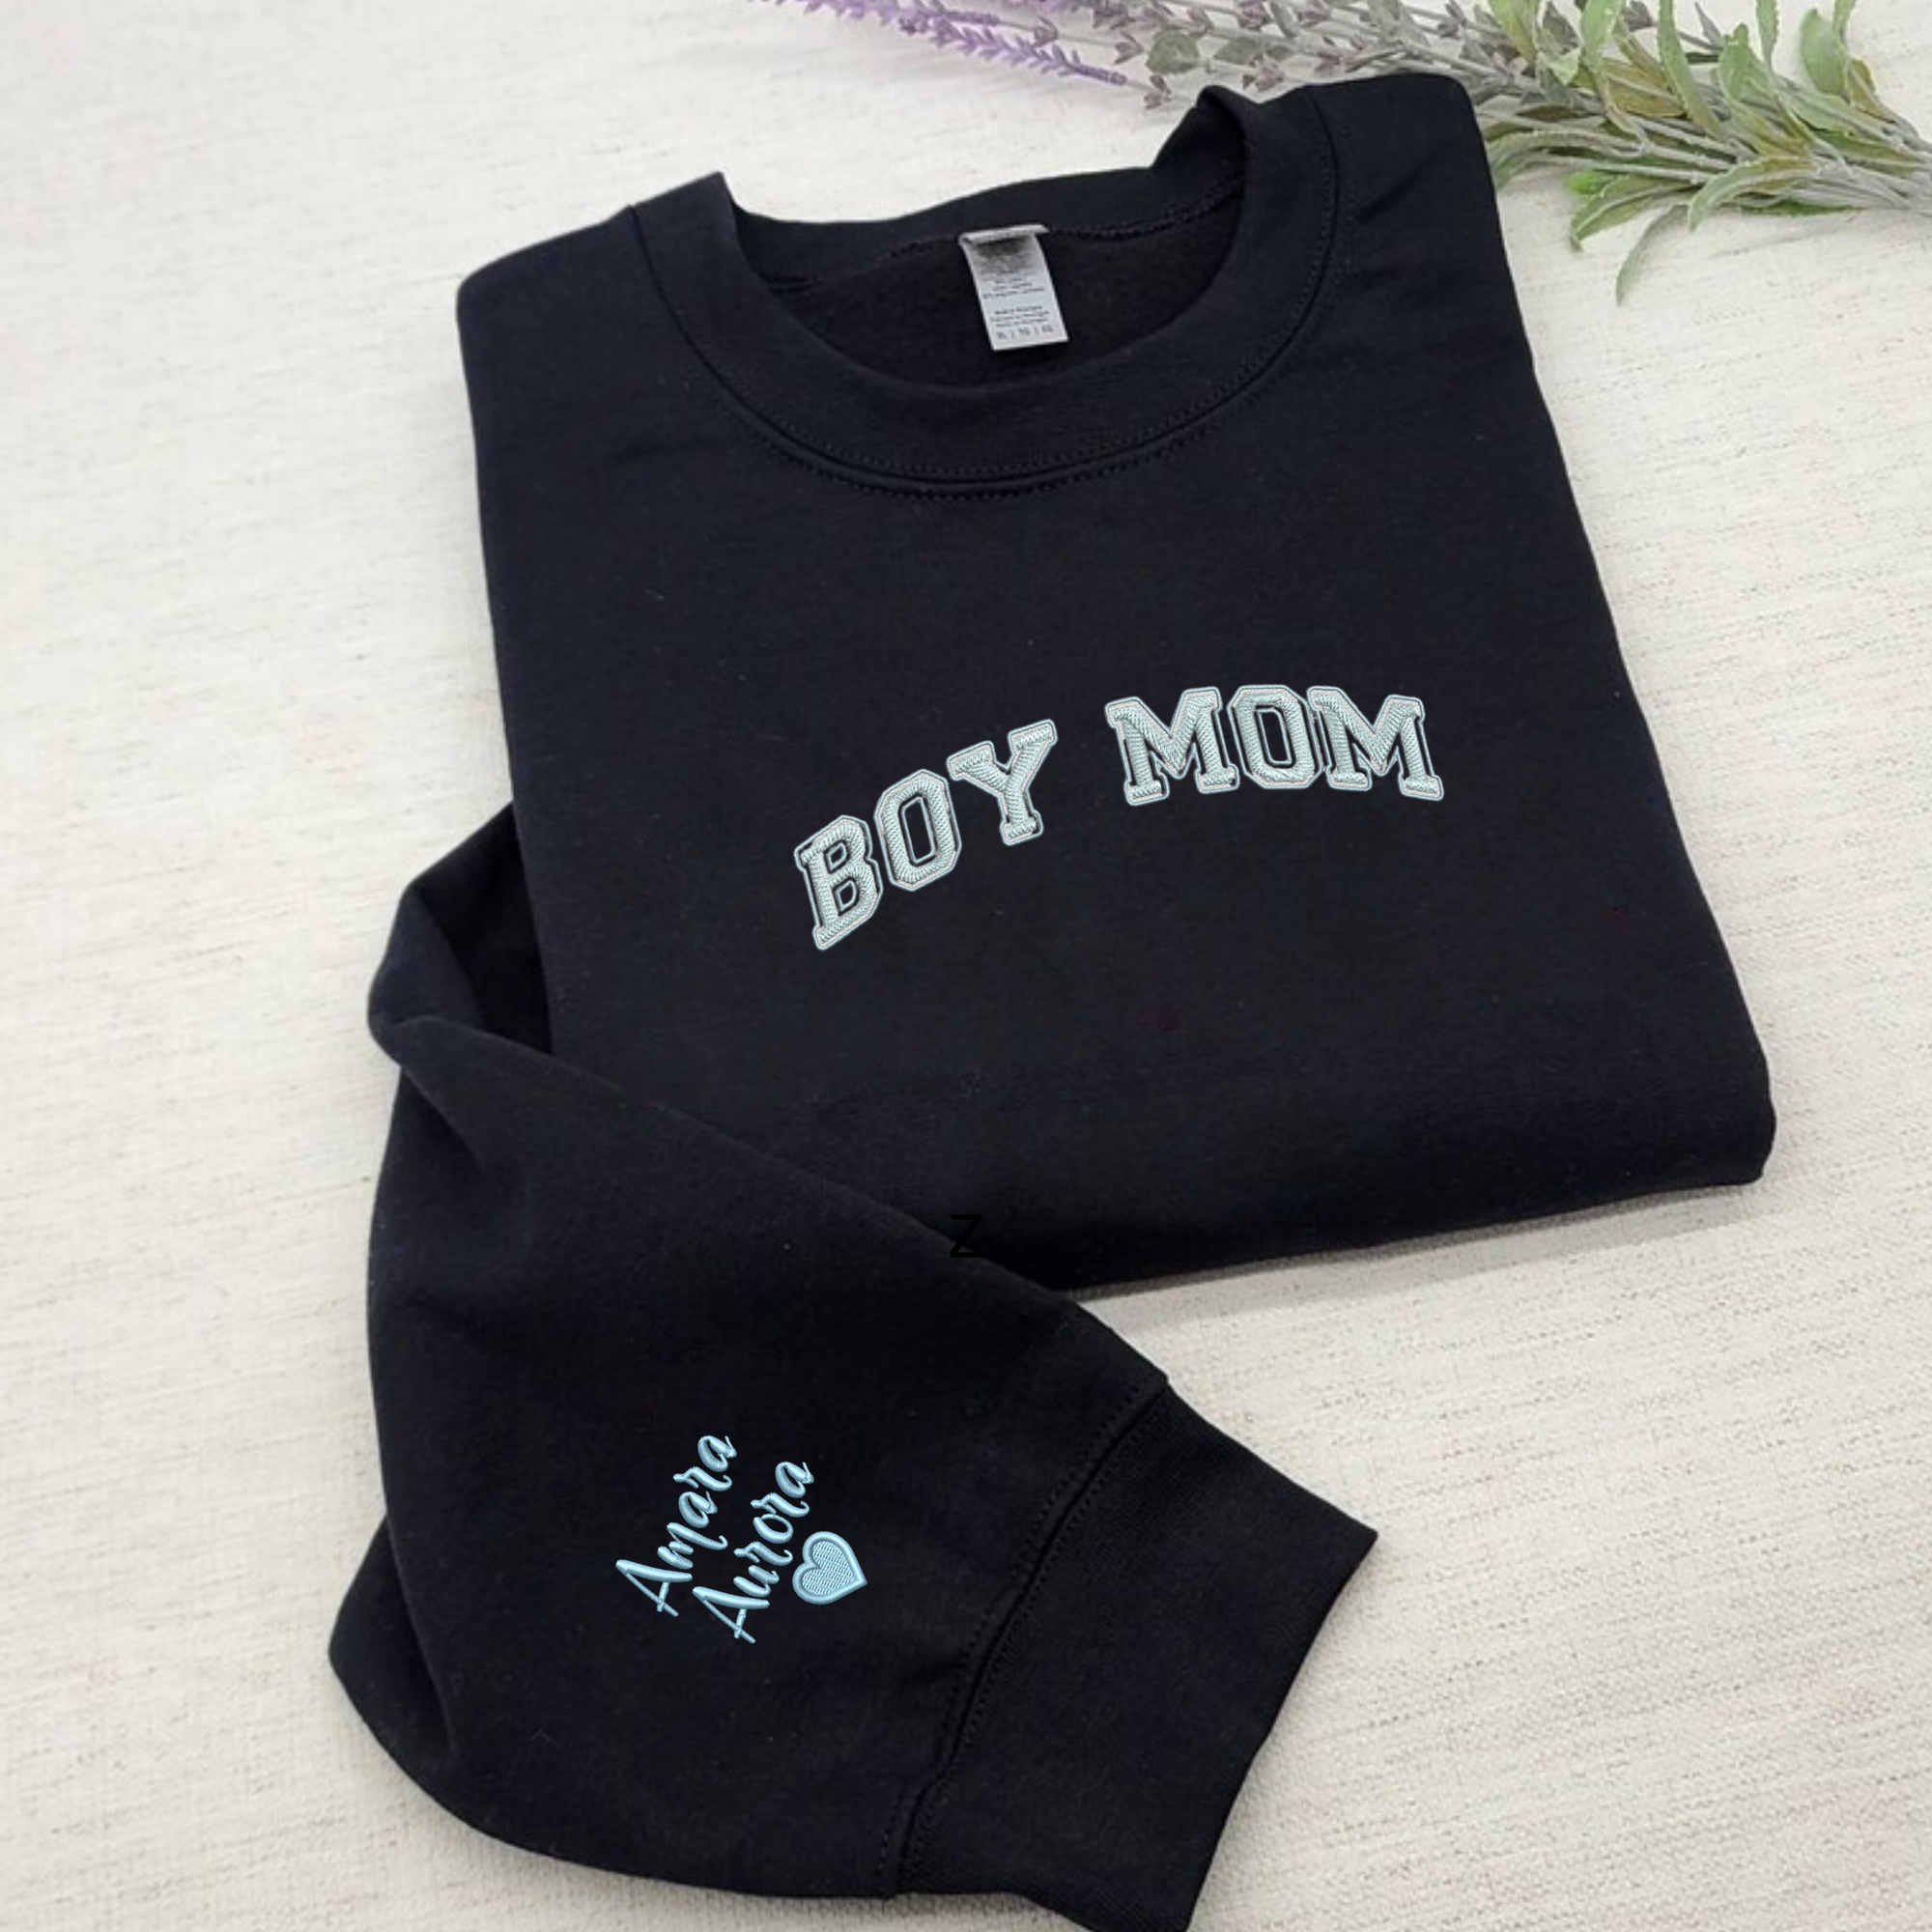 Boy Mom Things Sweatshirt Gifts For Gender Reveal Idea Hoodie T-Shirt -  AnniversaryTrending